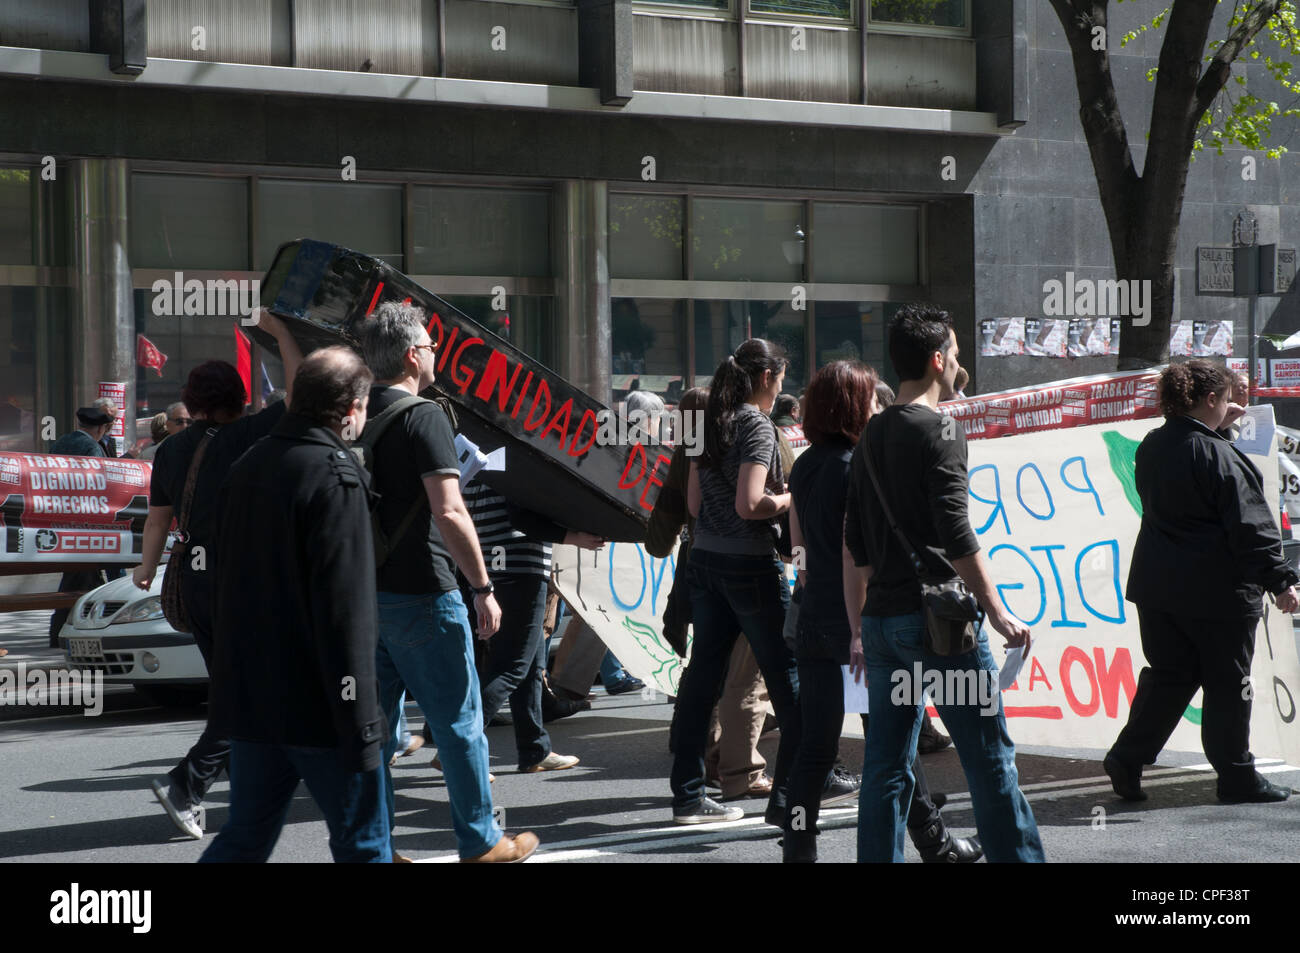 La Fête du travail Bilbao Espagne manifestations pacifiques à travers les rues du centre-ville Banque D'Images